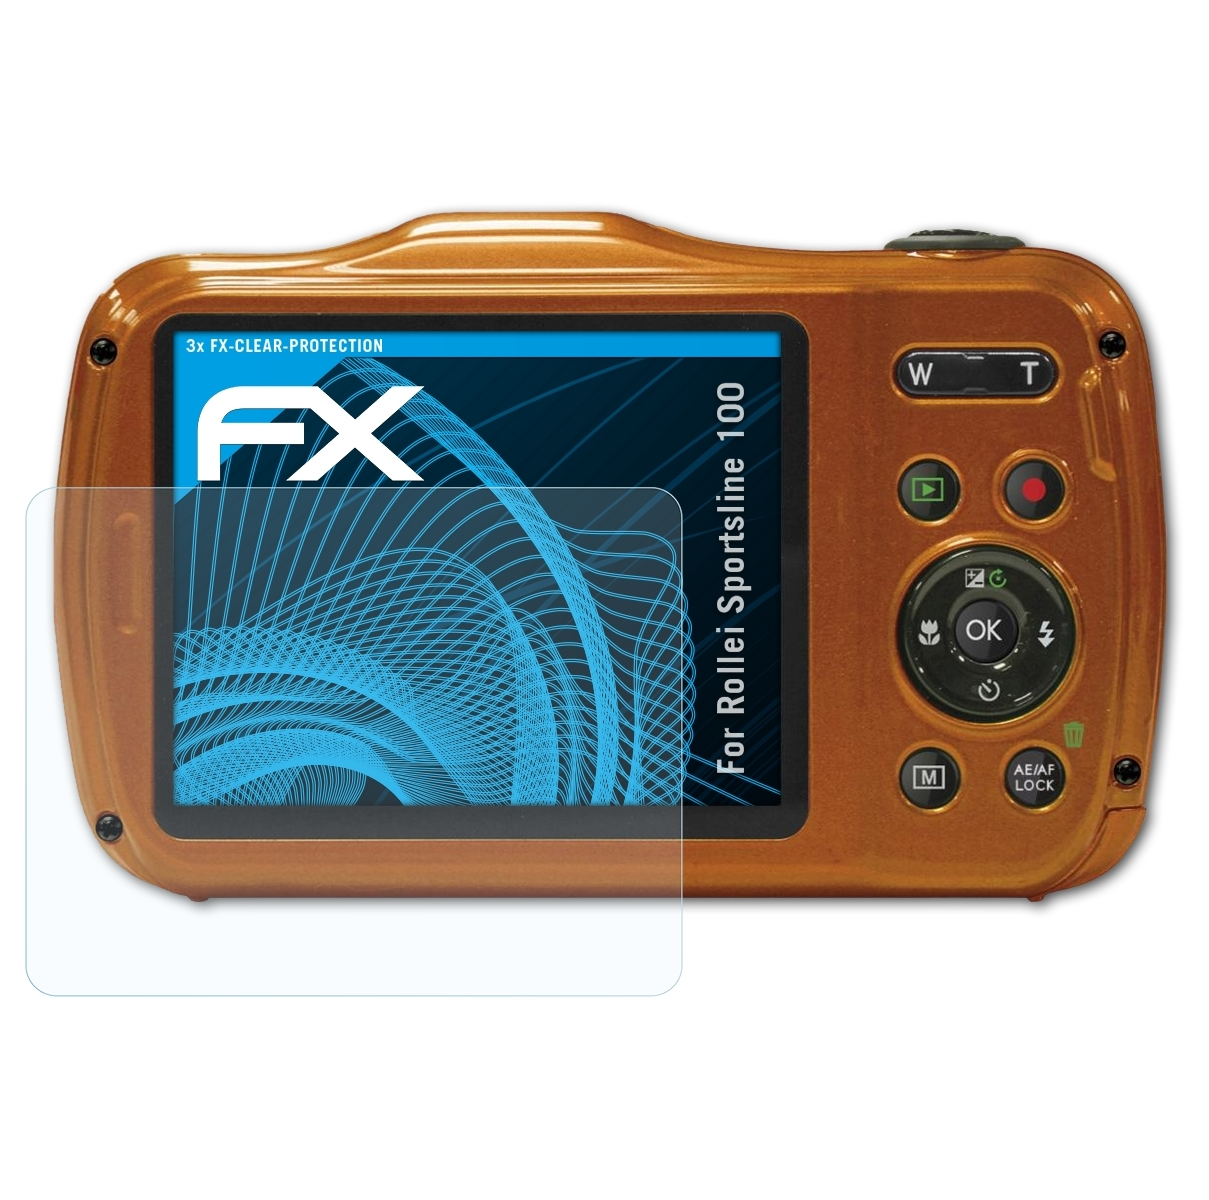 ATFOLIX Rollei 3x FX-Clear Sportsline Displayschutz(für 100)